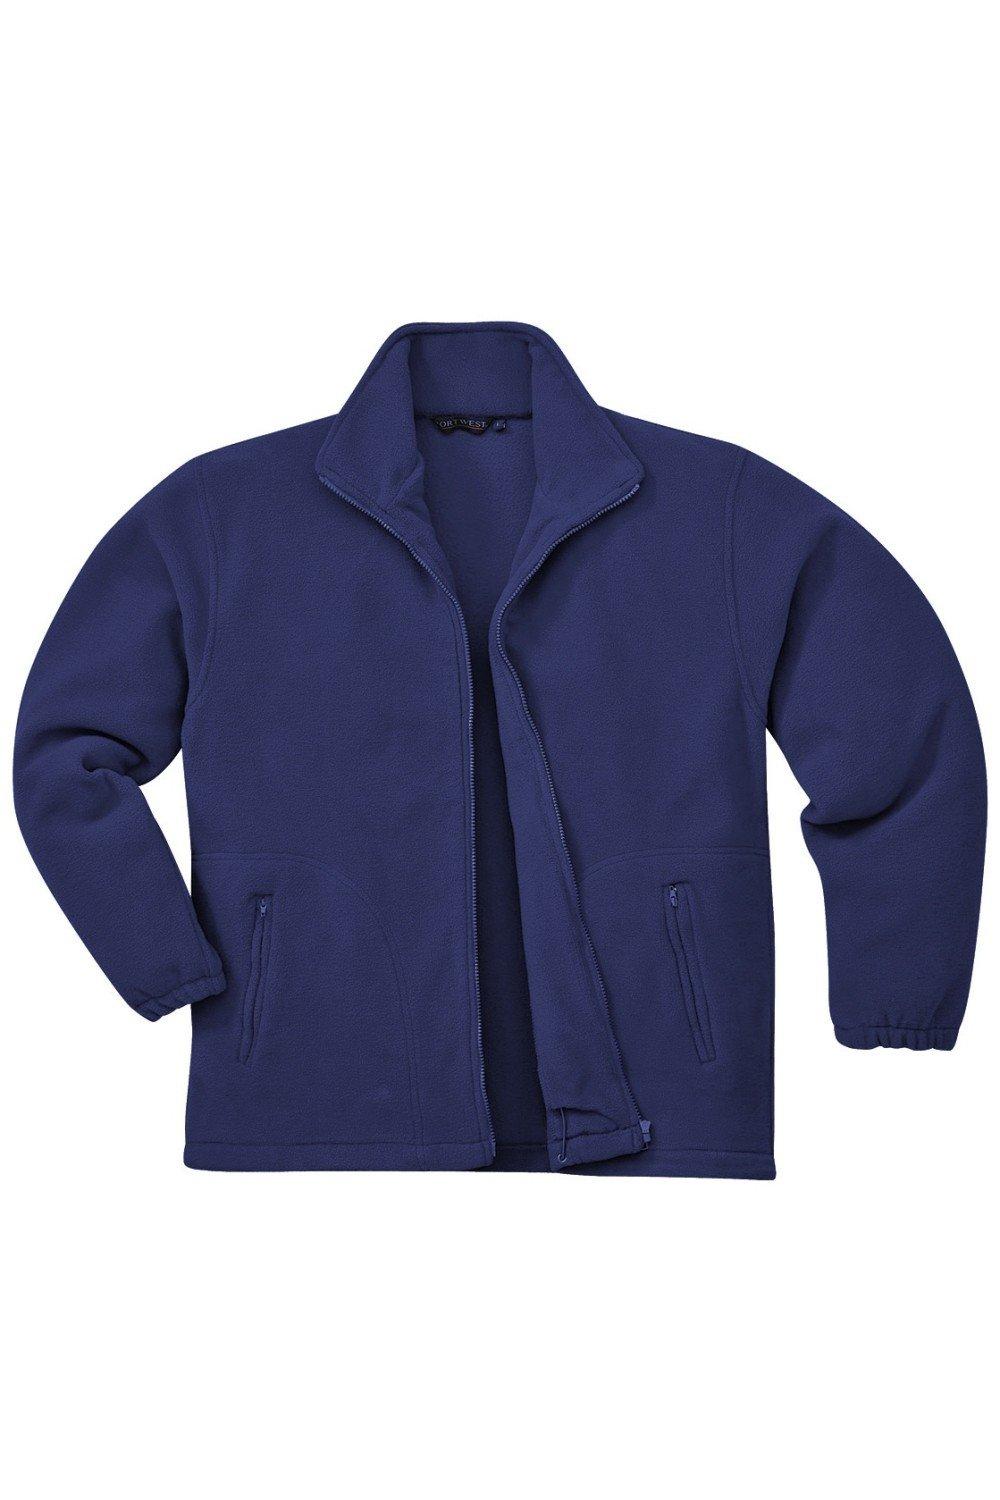 Флисовая куртка Argyll с защитой от скатывания (F400) Portwest, темно-синий творог правильныйтворог традиционный 9% 400 г